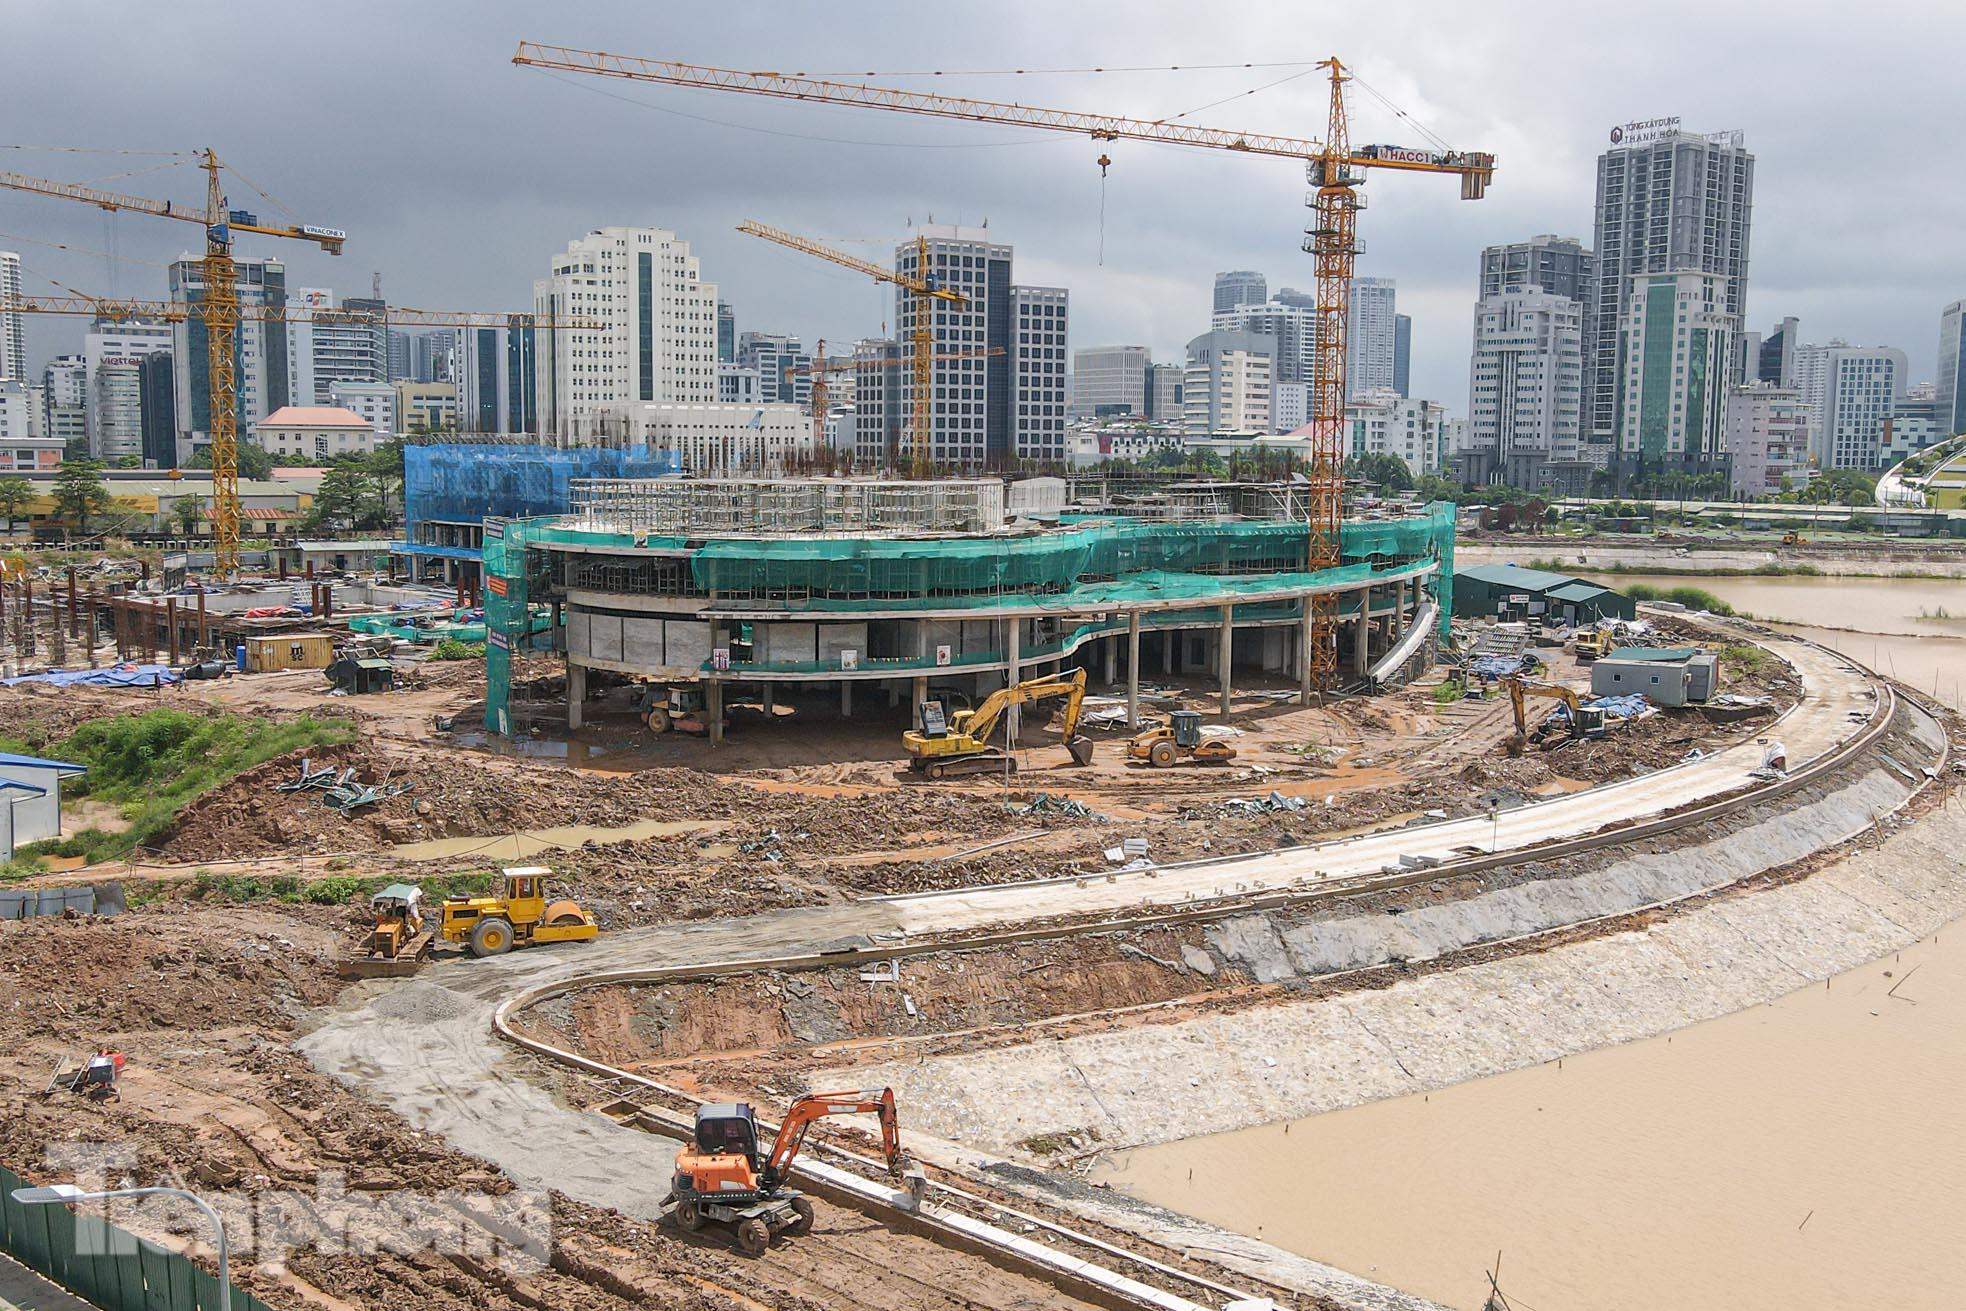 Hình ảnh mới nhất về Cung thiếu nhi gần 1.400 tỷ đồng đang xây dựng ở Hà Nội - Ảnh 2.